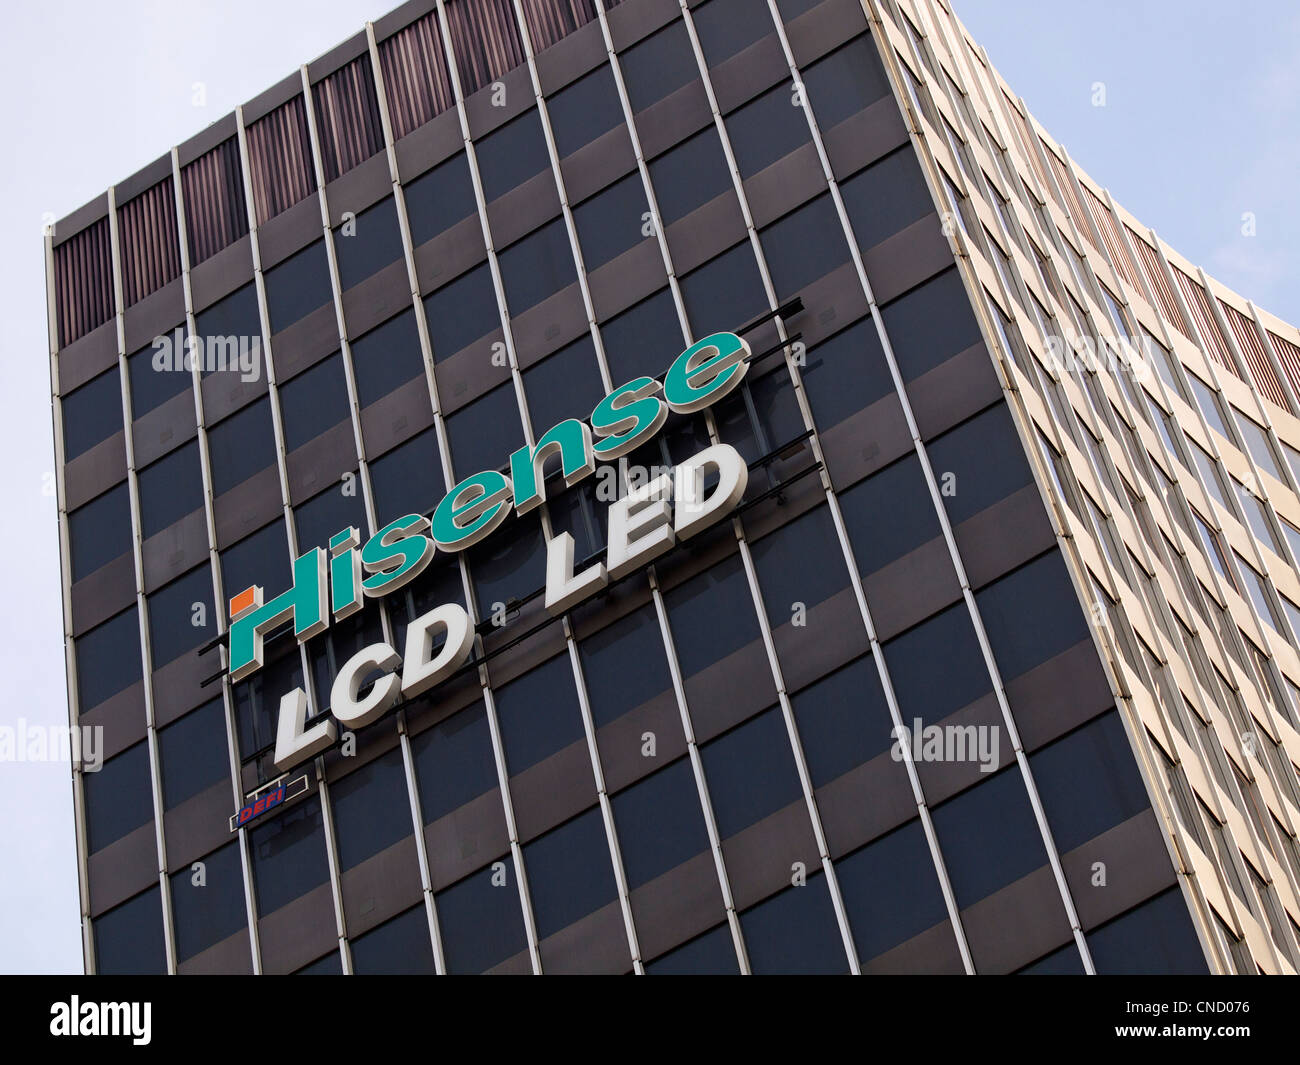 Hisense Schild an einem Gebäude in Brüssel, Belgien. Hisense ist ein multinationaler Elektronikhersteller mit Sitz in China. Stockfoto